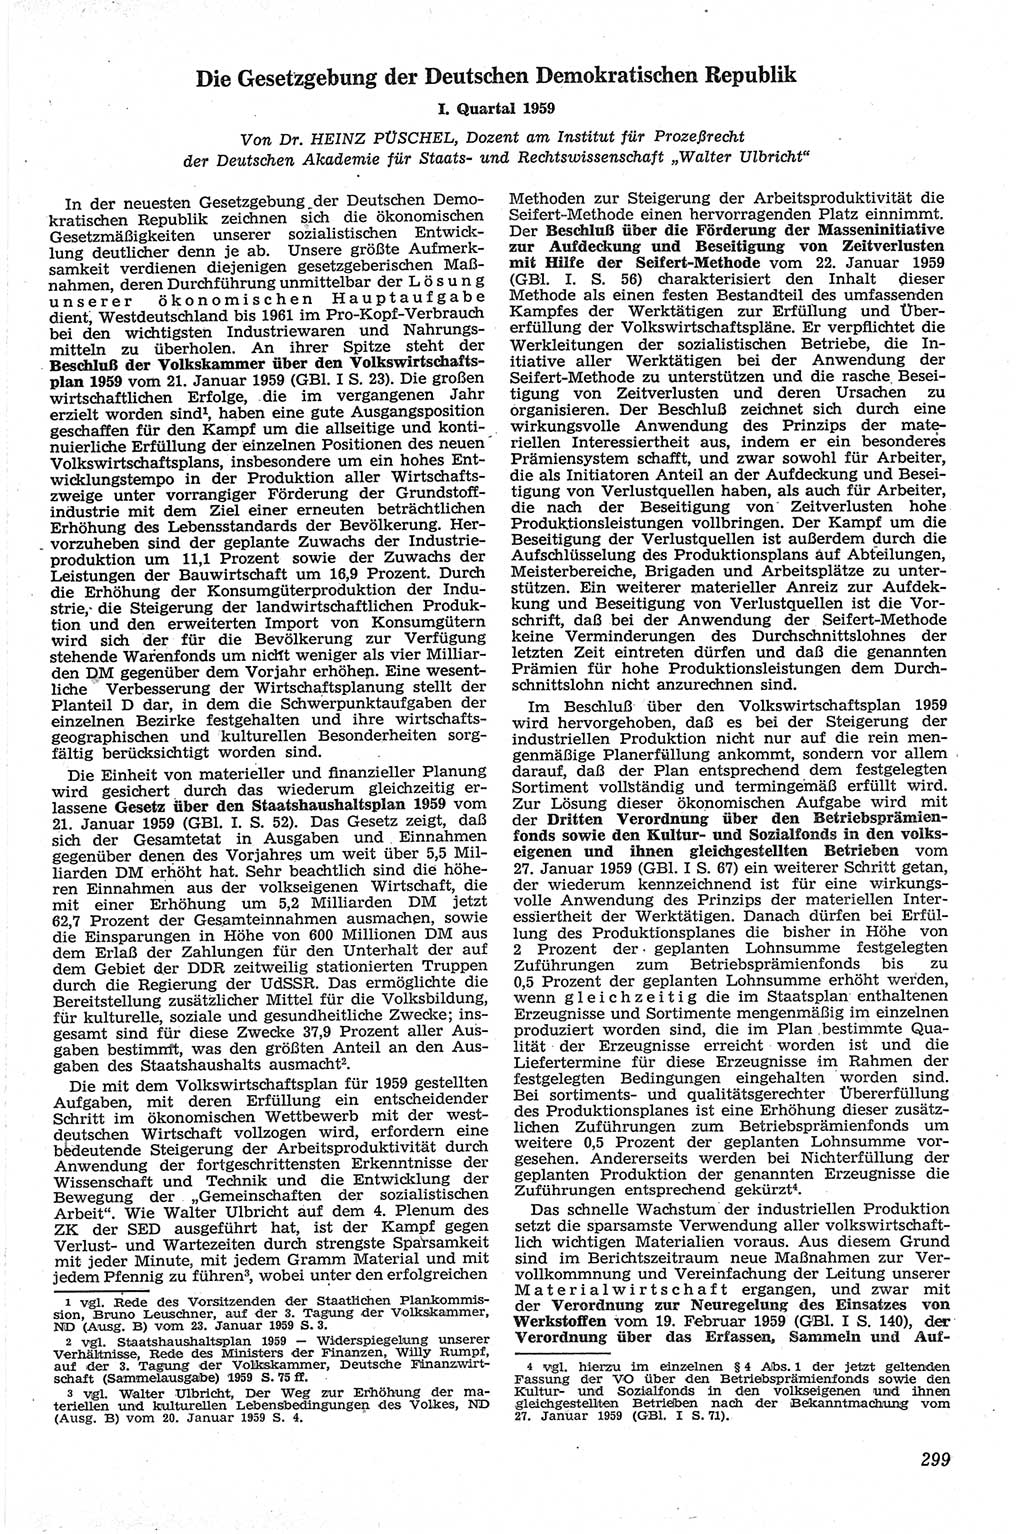 Neue Justiz (NJ), Zeitschrift für Recht und Rechtswissenschaft [Deutsche Demokratische Republik (DDR)], 13. Jahrgang 1959, Seite 299 (NJ DDR 1959, S. 299)